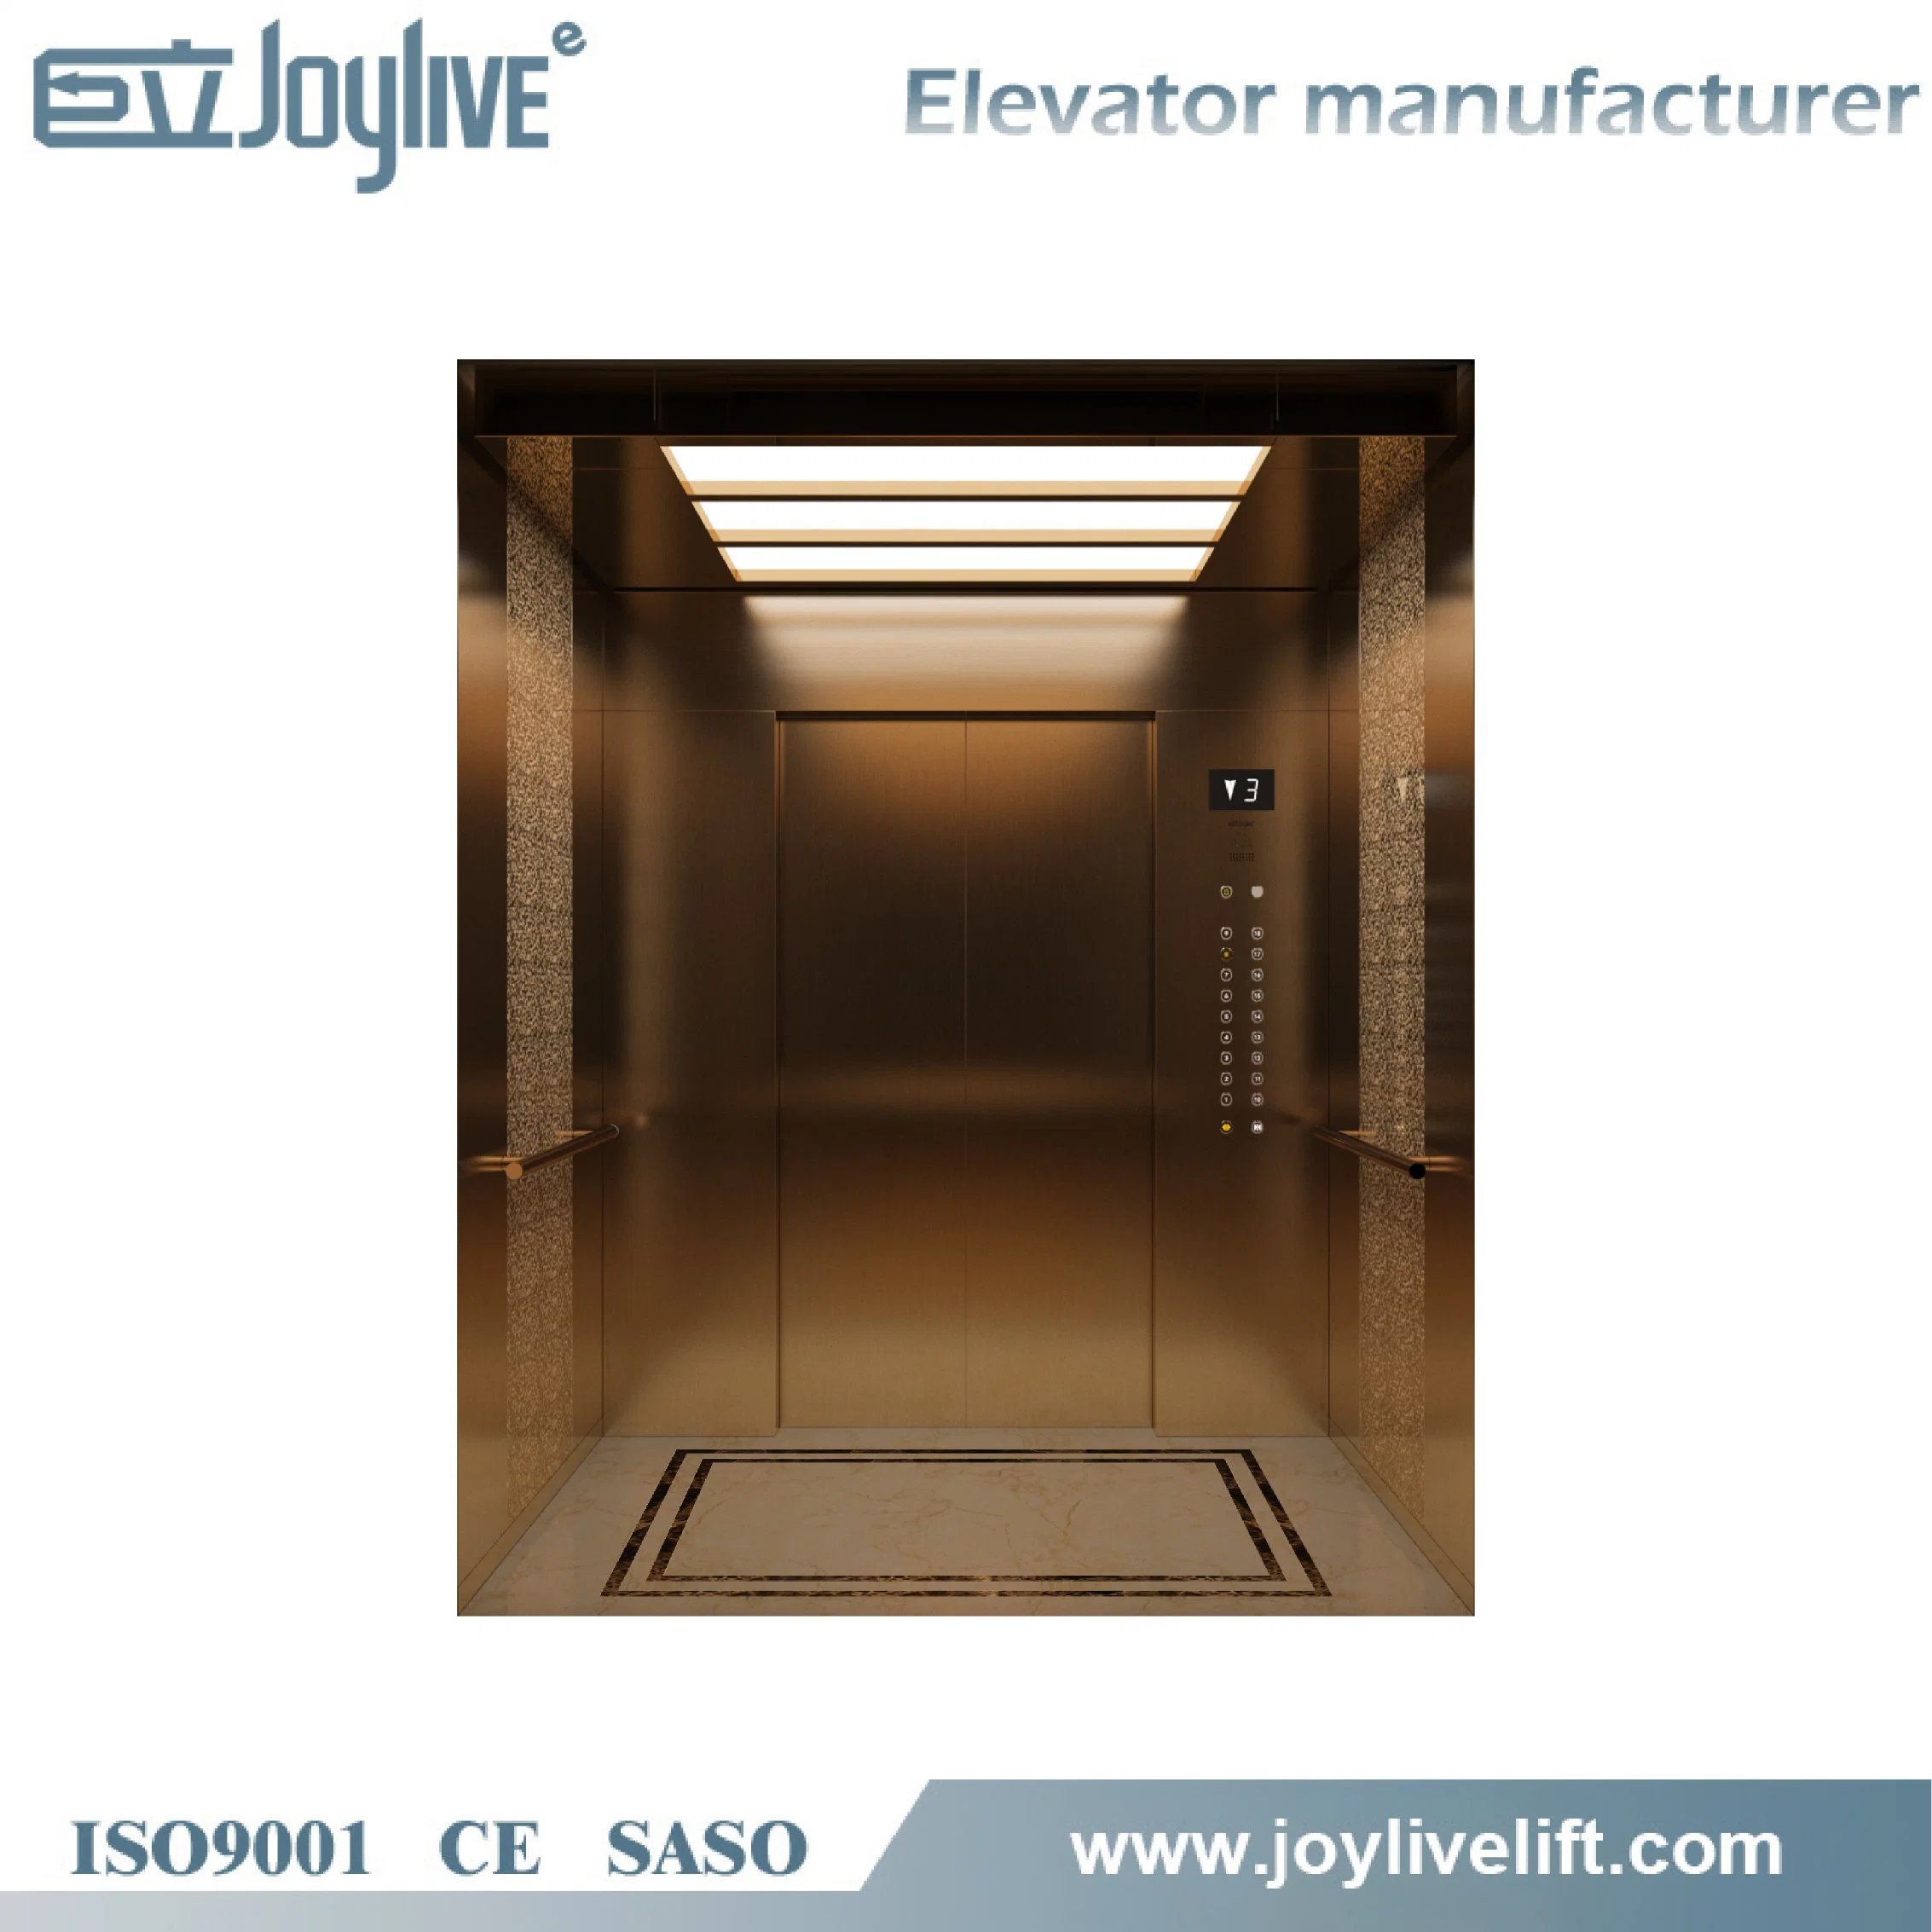 Large Car Room 800kg 600kg 1000kg Vvvf Passenger Elevator Lift for Super Mall with CE ISO